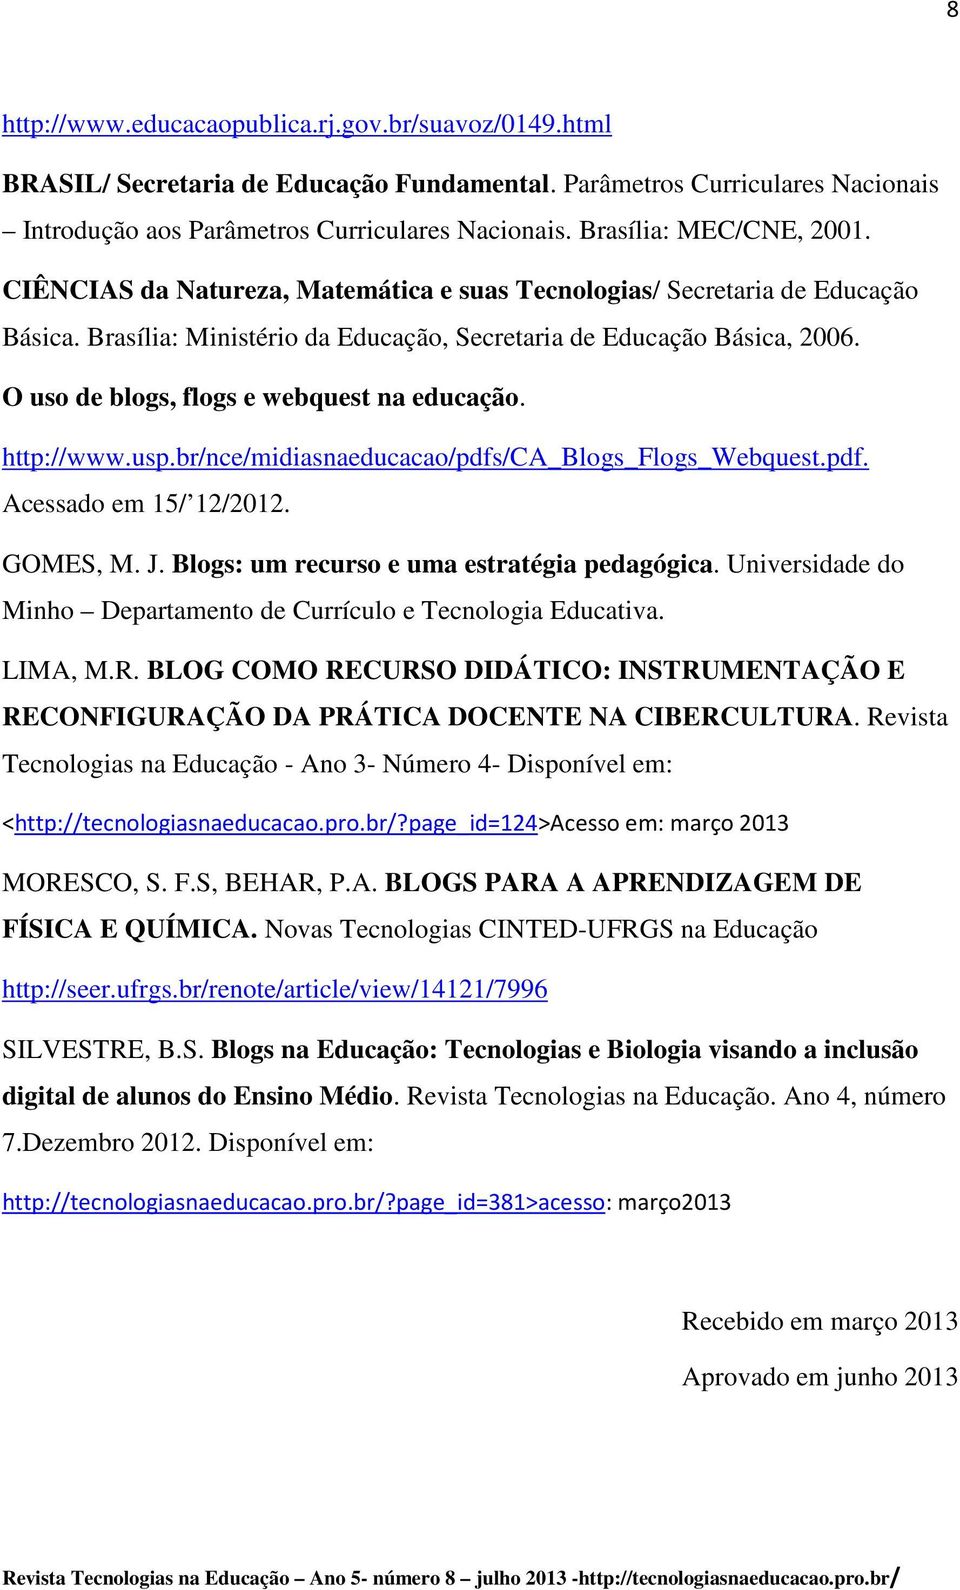 O uso de blogs, flogs e webquest na educação. http://www.usp.br/nce/midiasnaeducacao/pdfs/ca_blogs_flogs_webquest.pdf. Acessado em 15/ 12/2012. GOMES, M. J.